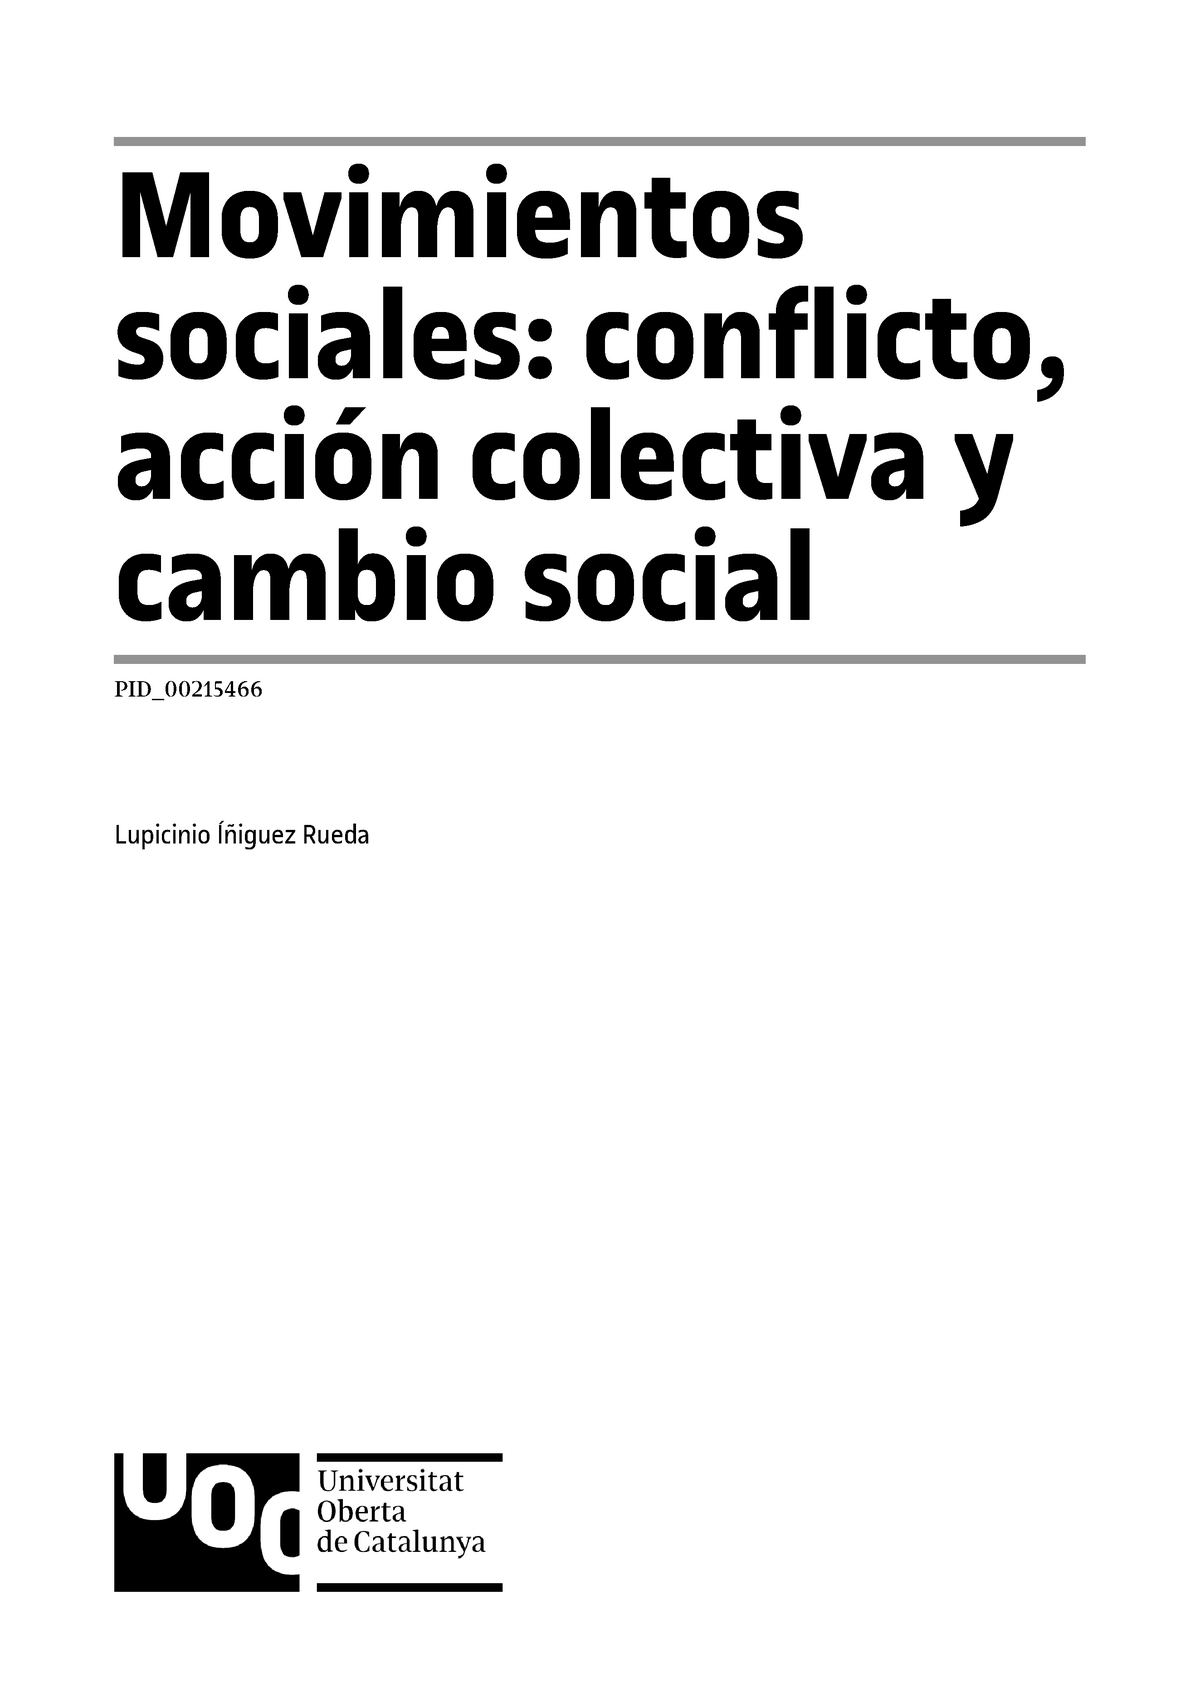 2 Movimientos Sociales Conflicto Acción Colectiva Y Cambio Social Movimientos Sociales 0504